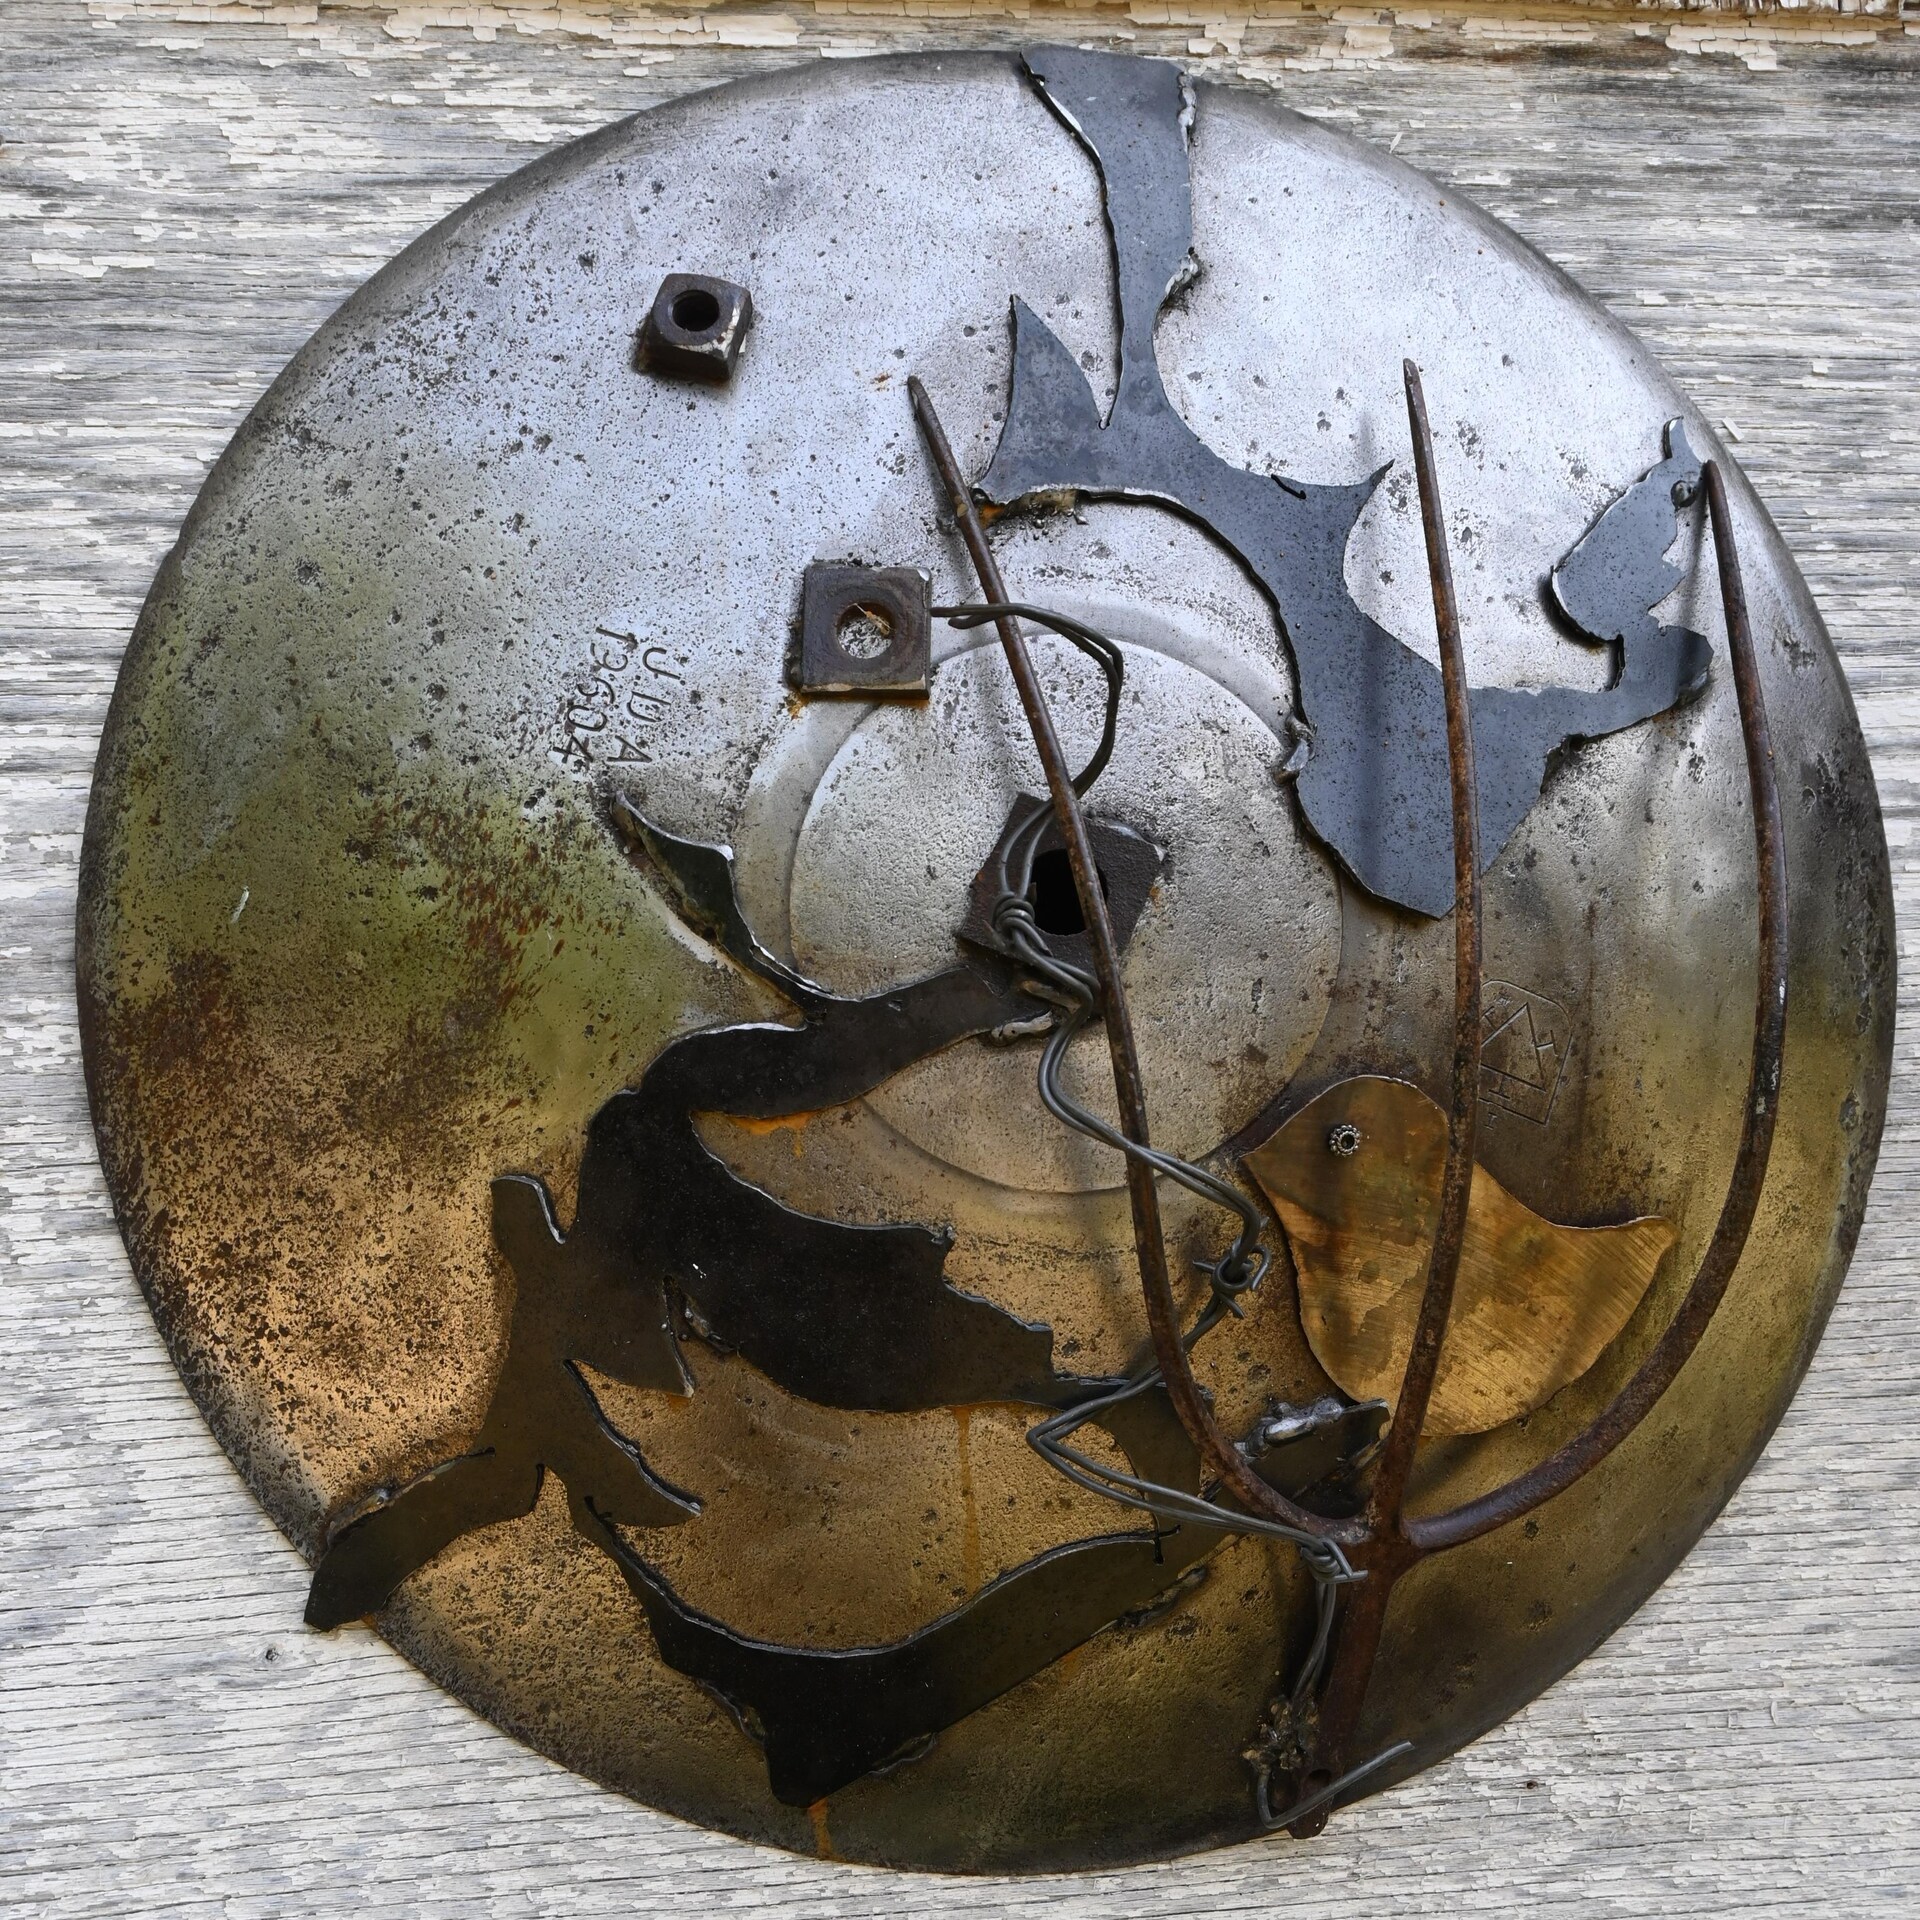 Sur un cercle en métal, l'artiste y a soudé quelques pièces en métal, dont une fourche, des boulons, de la broche et la découpure d'un oiseau.